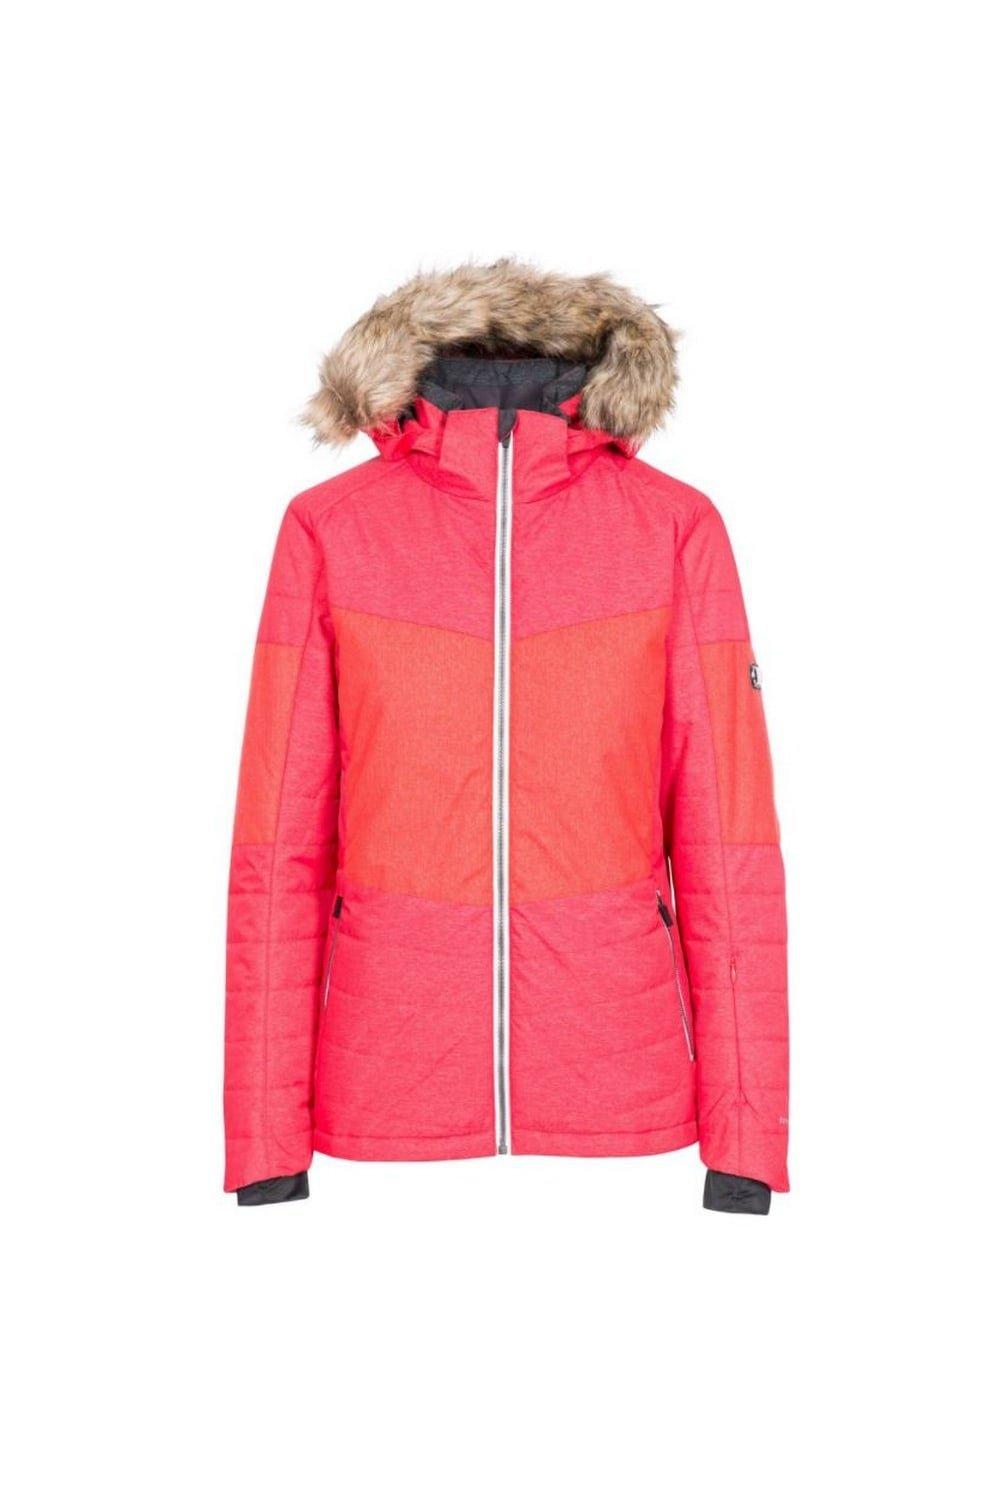 Лыжная куртка Тиффани Trespass, красный мужская лыжная куртка bowie темно синяя trespass цвет azul